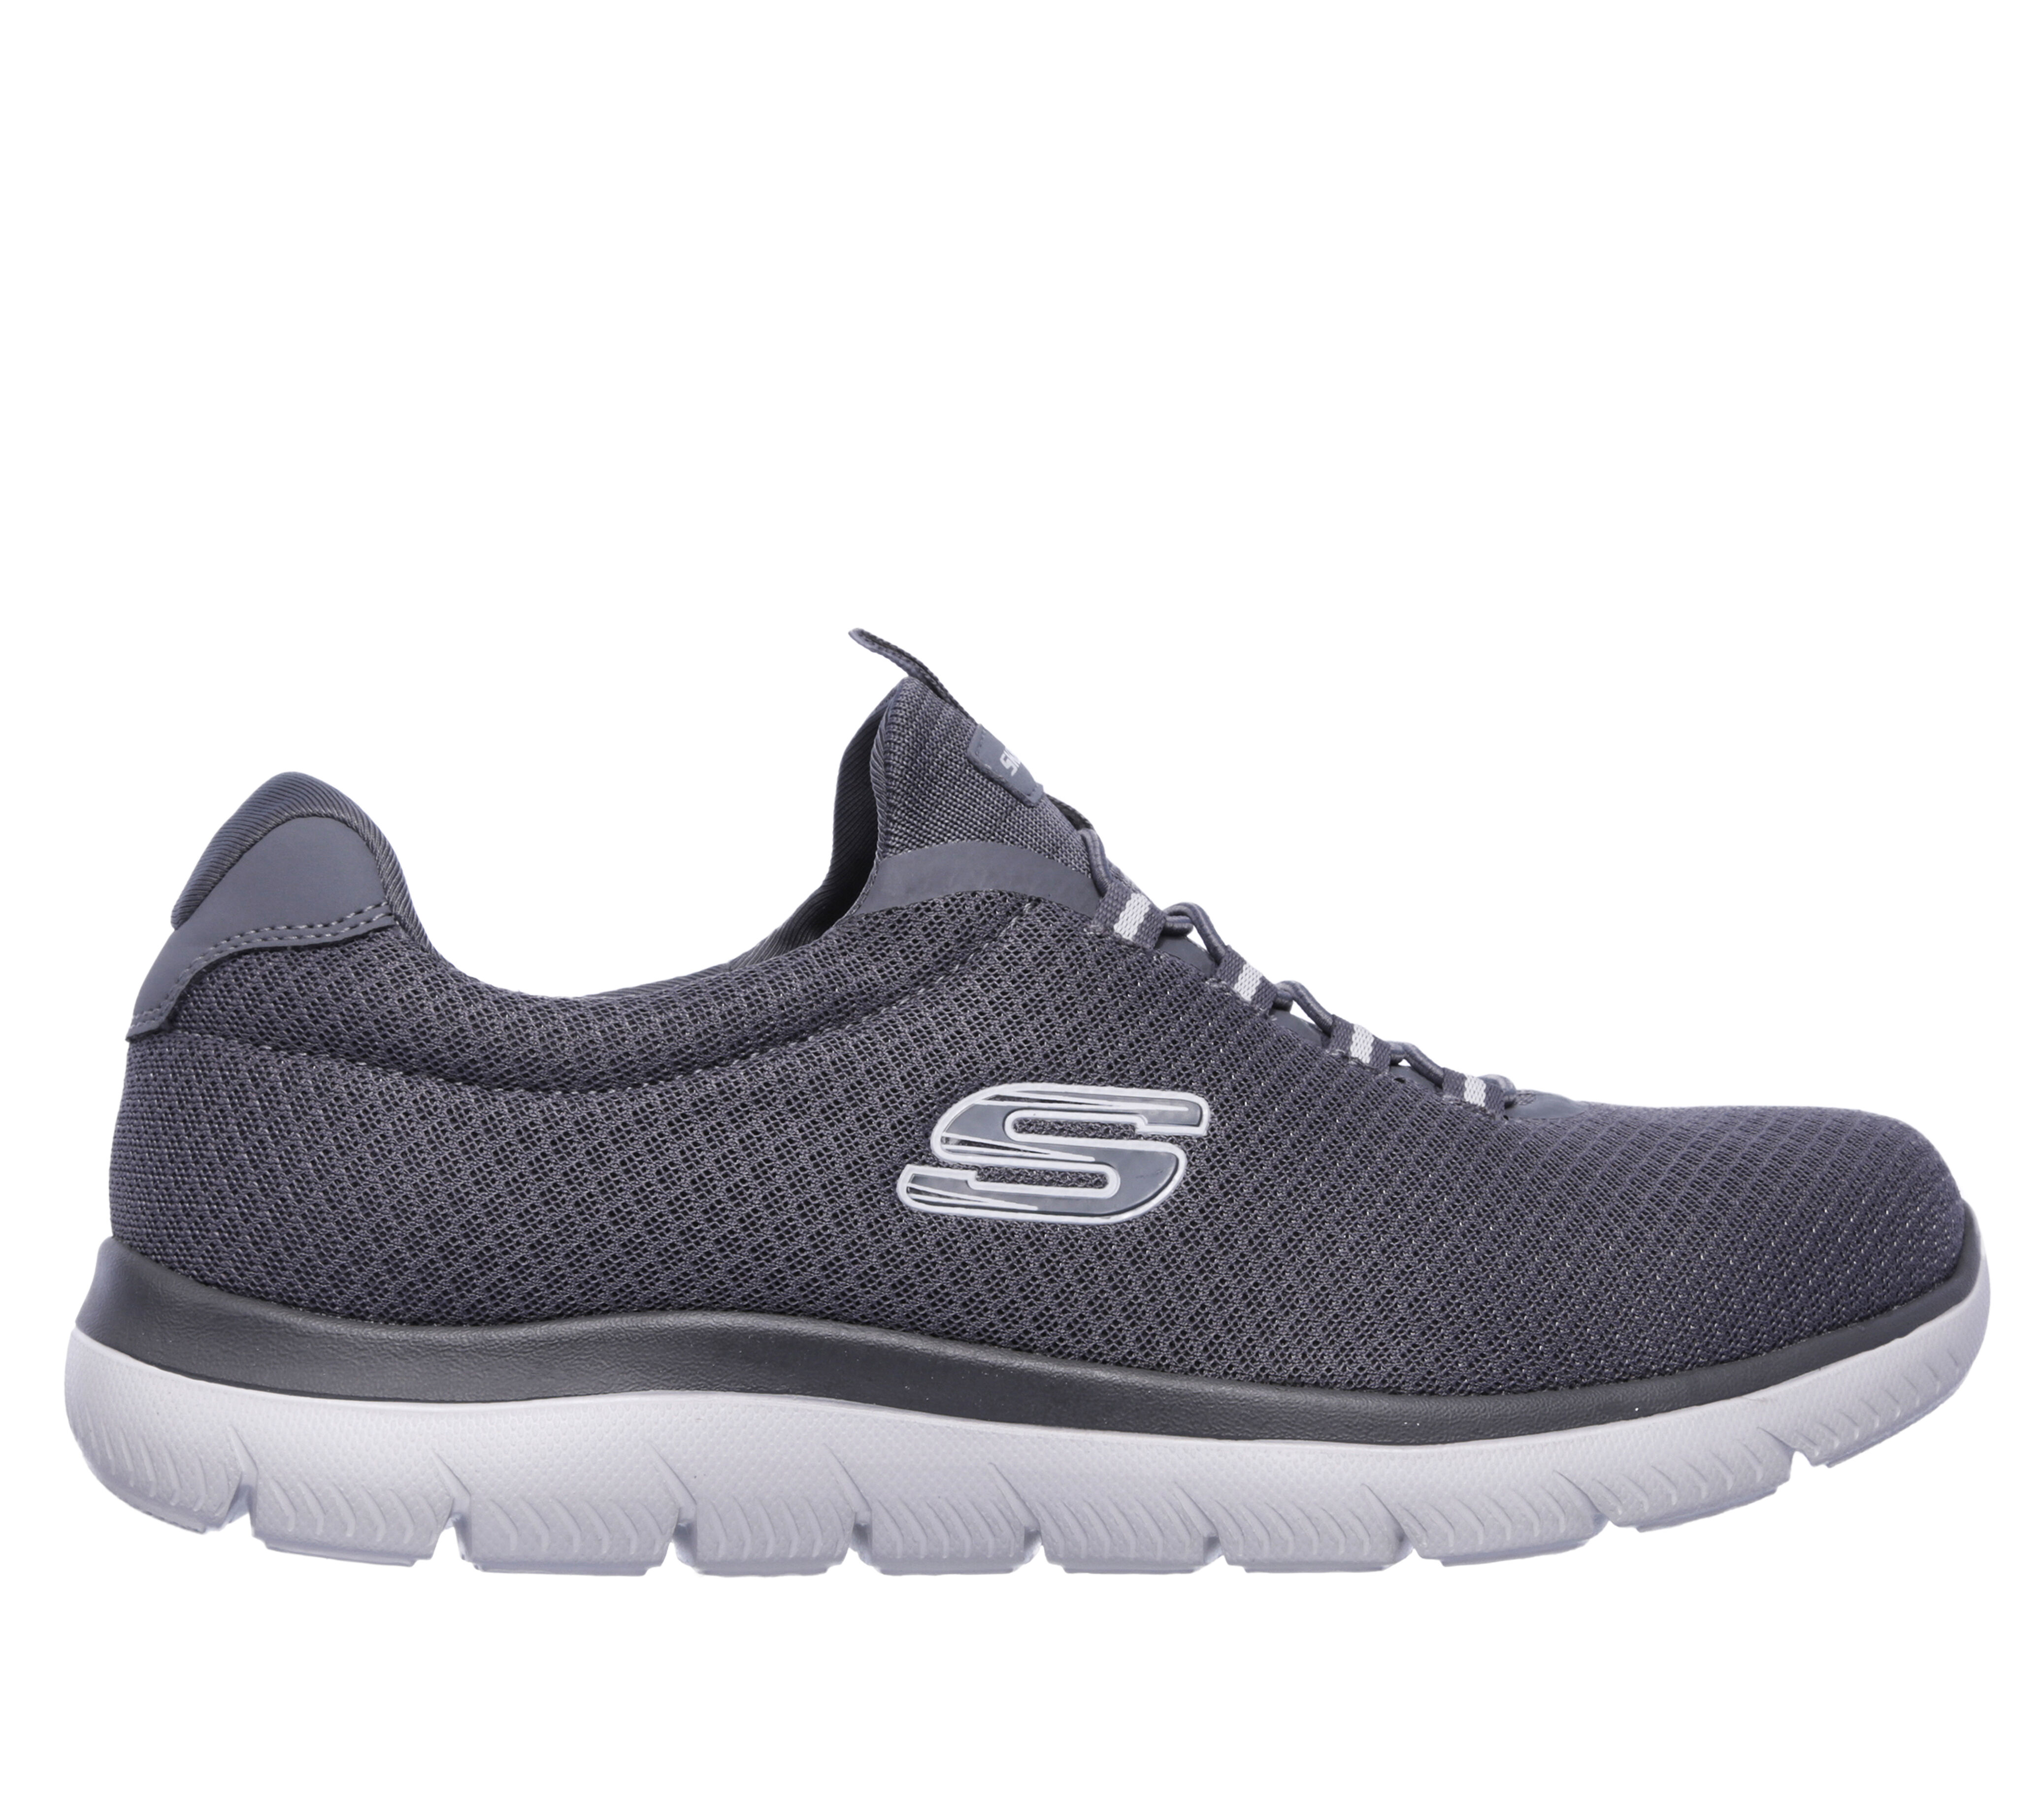 Men's Slip On Shoes & Trainers | Men's Slip Ons | SKECHERS